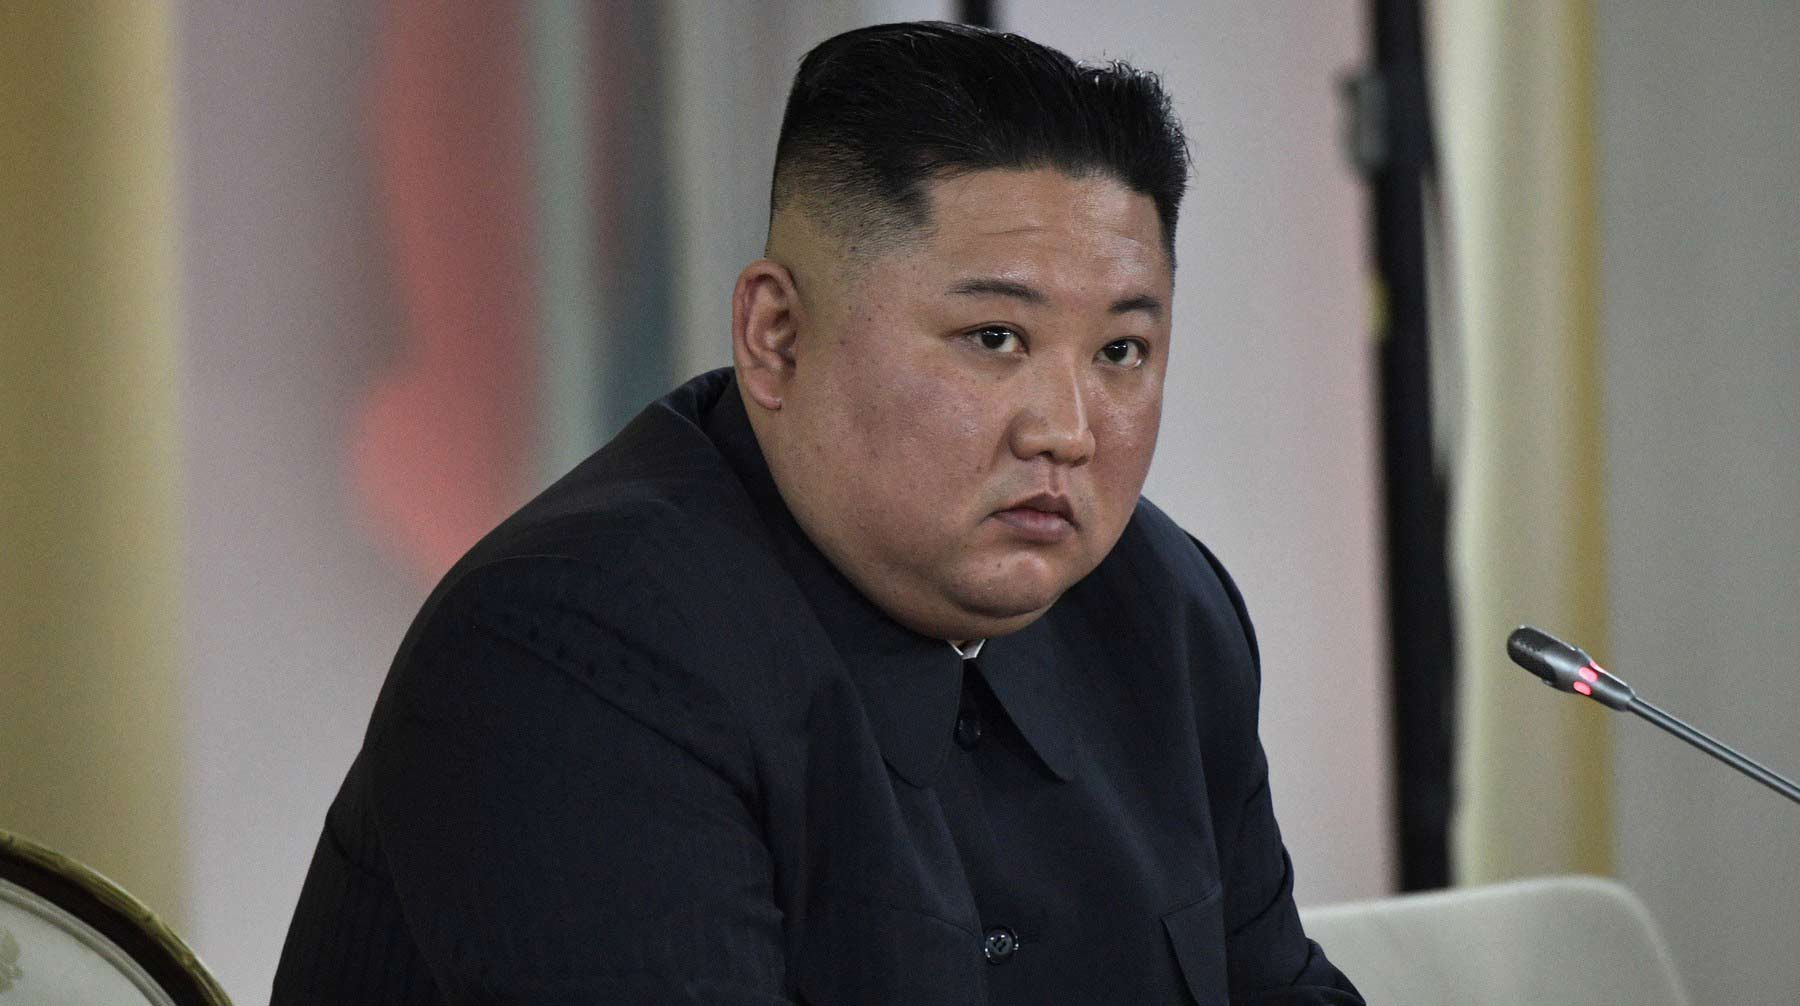 Dailystorm - Ким Чен Ын попросил прощения у Южной Кореи за убийство чиновника